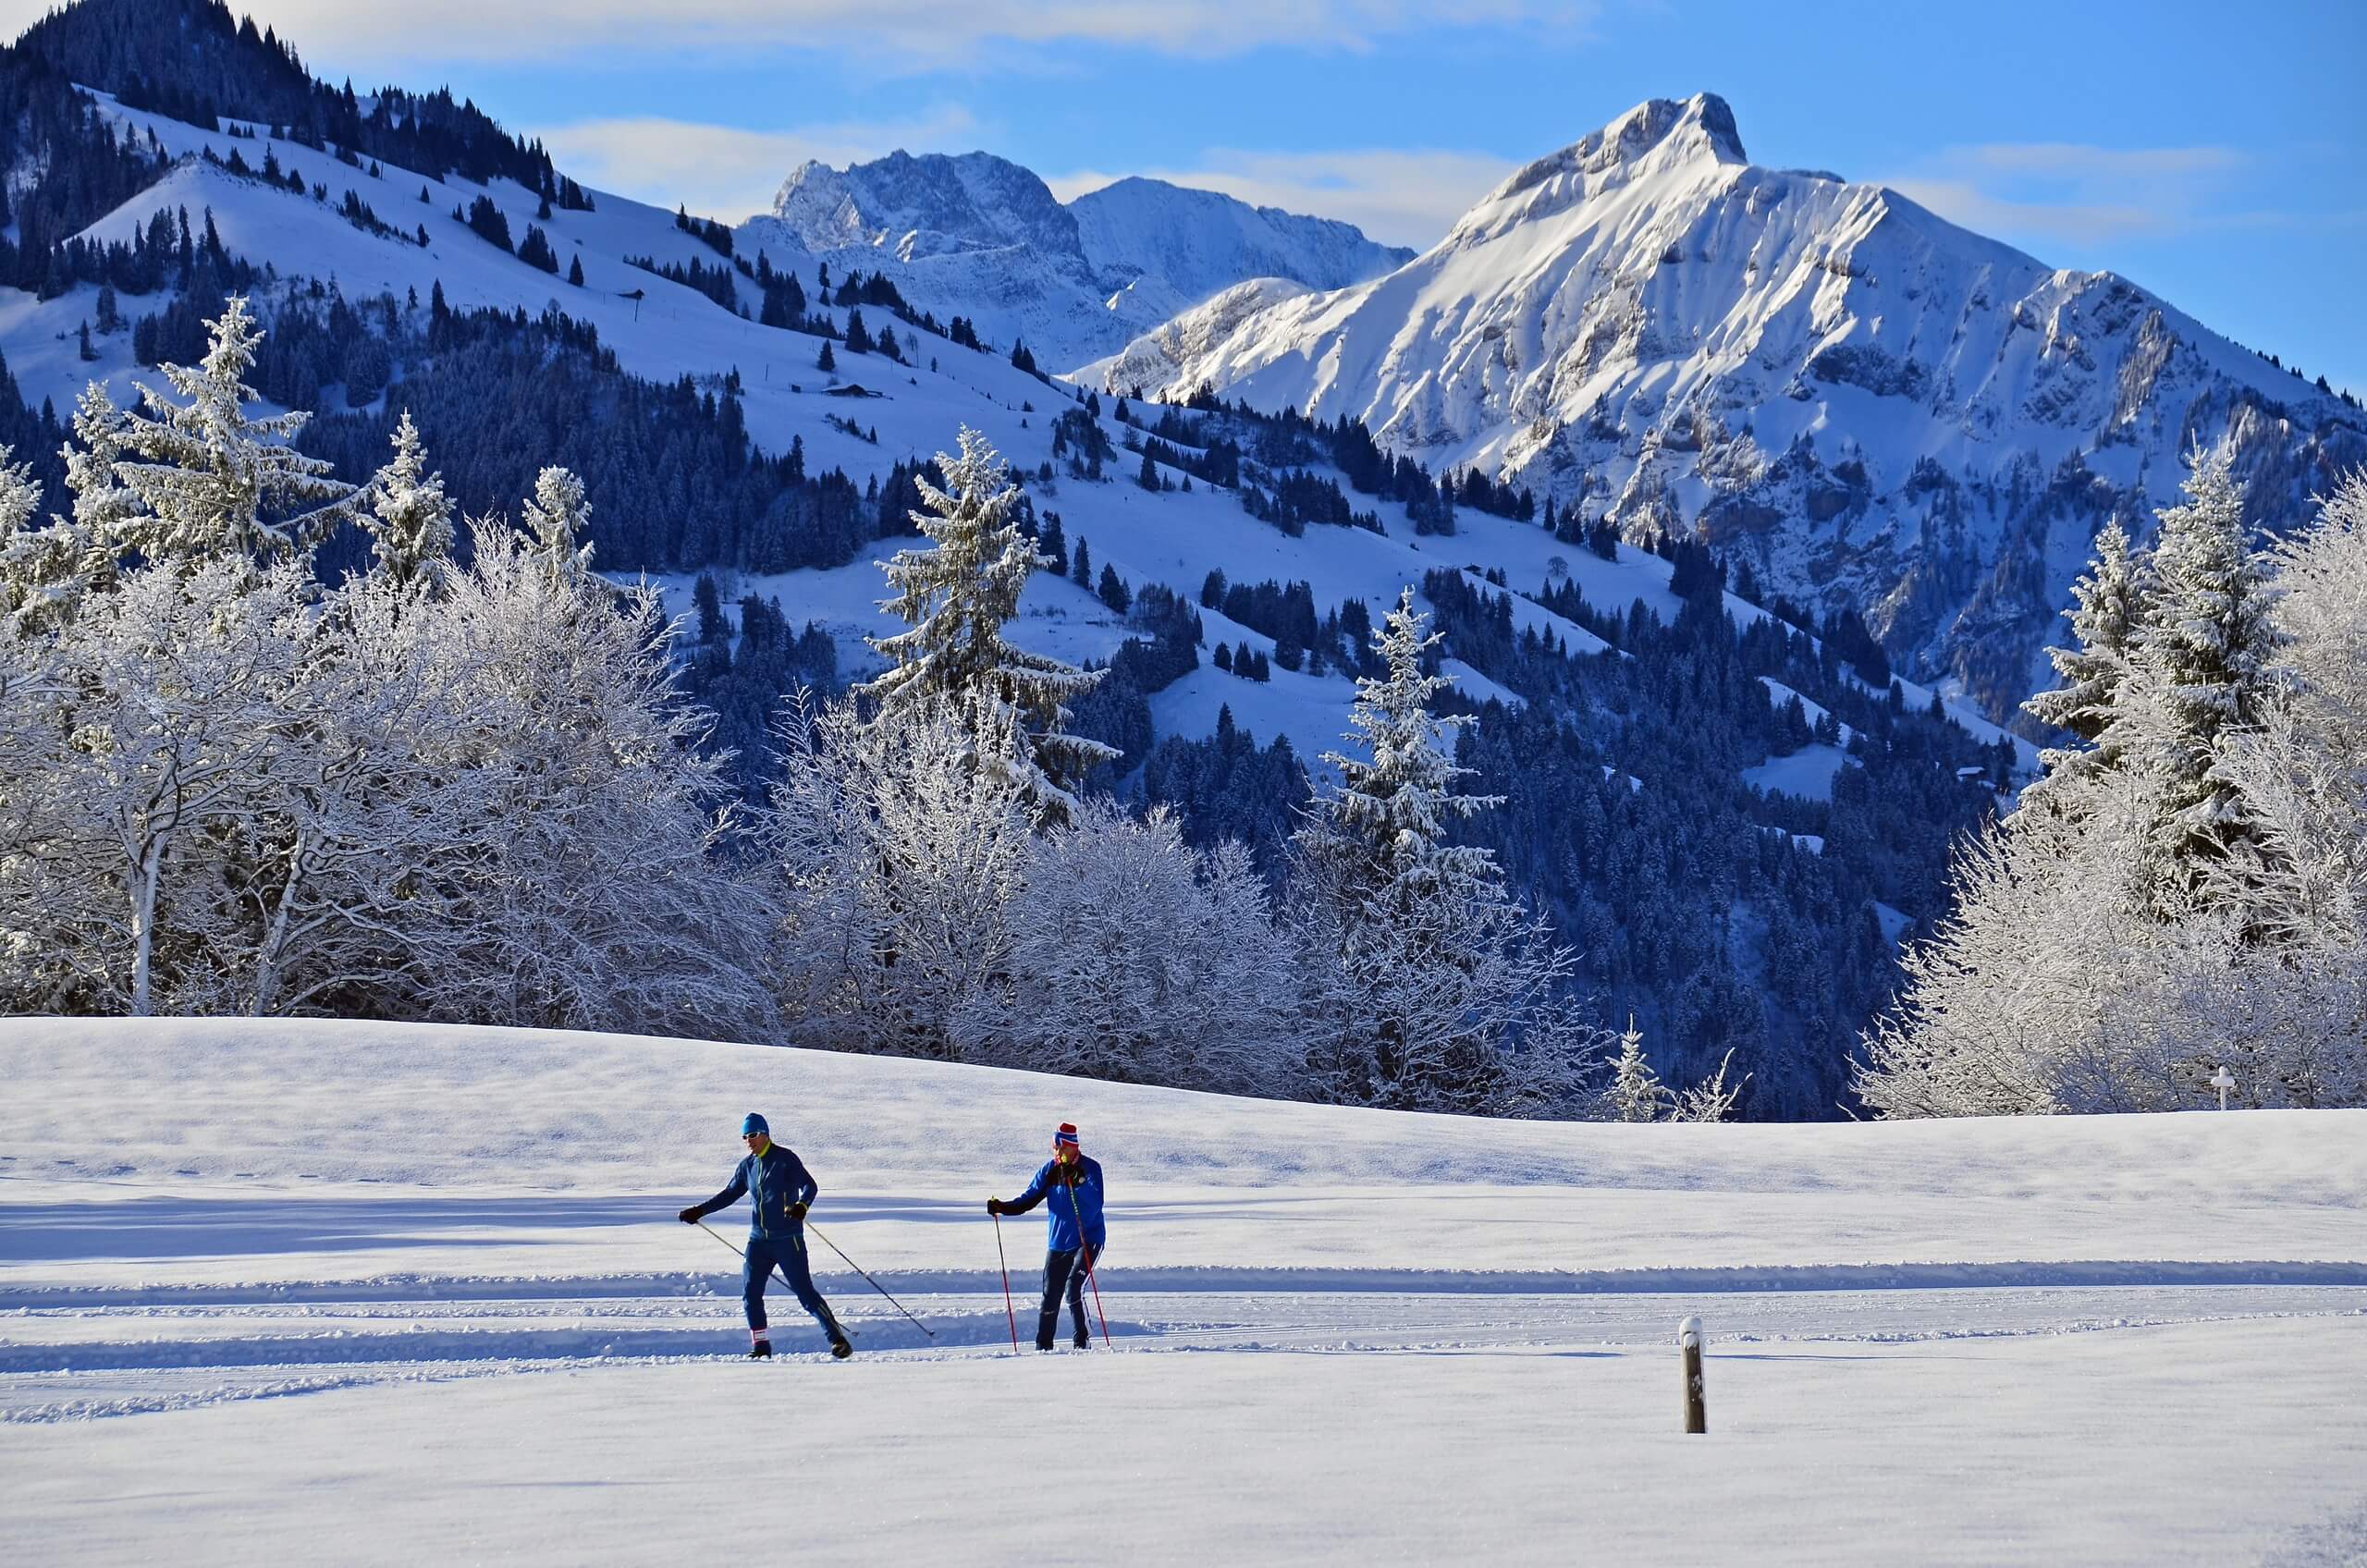 spiez-langlauf-loipe-suldtal-schnee-winter-sport